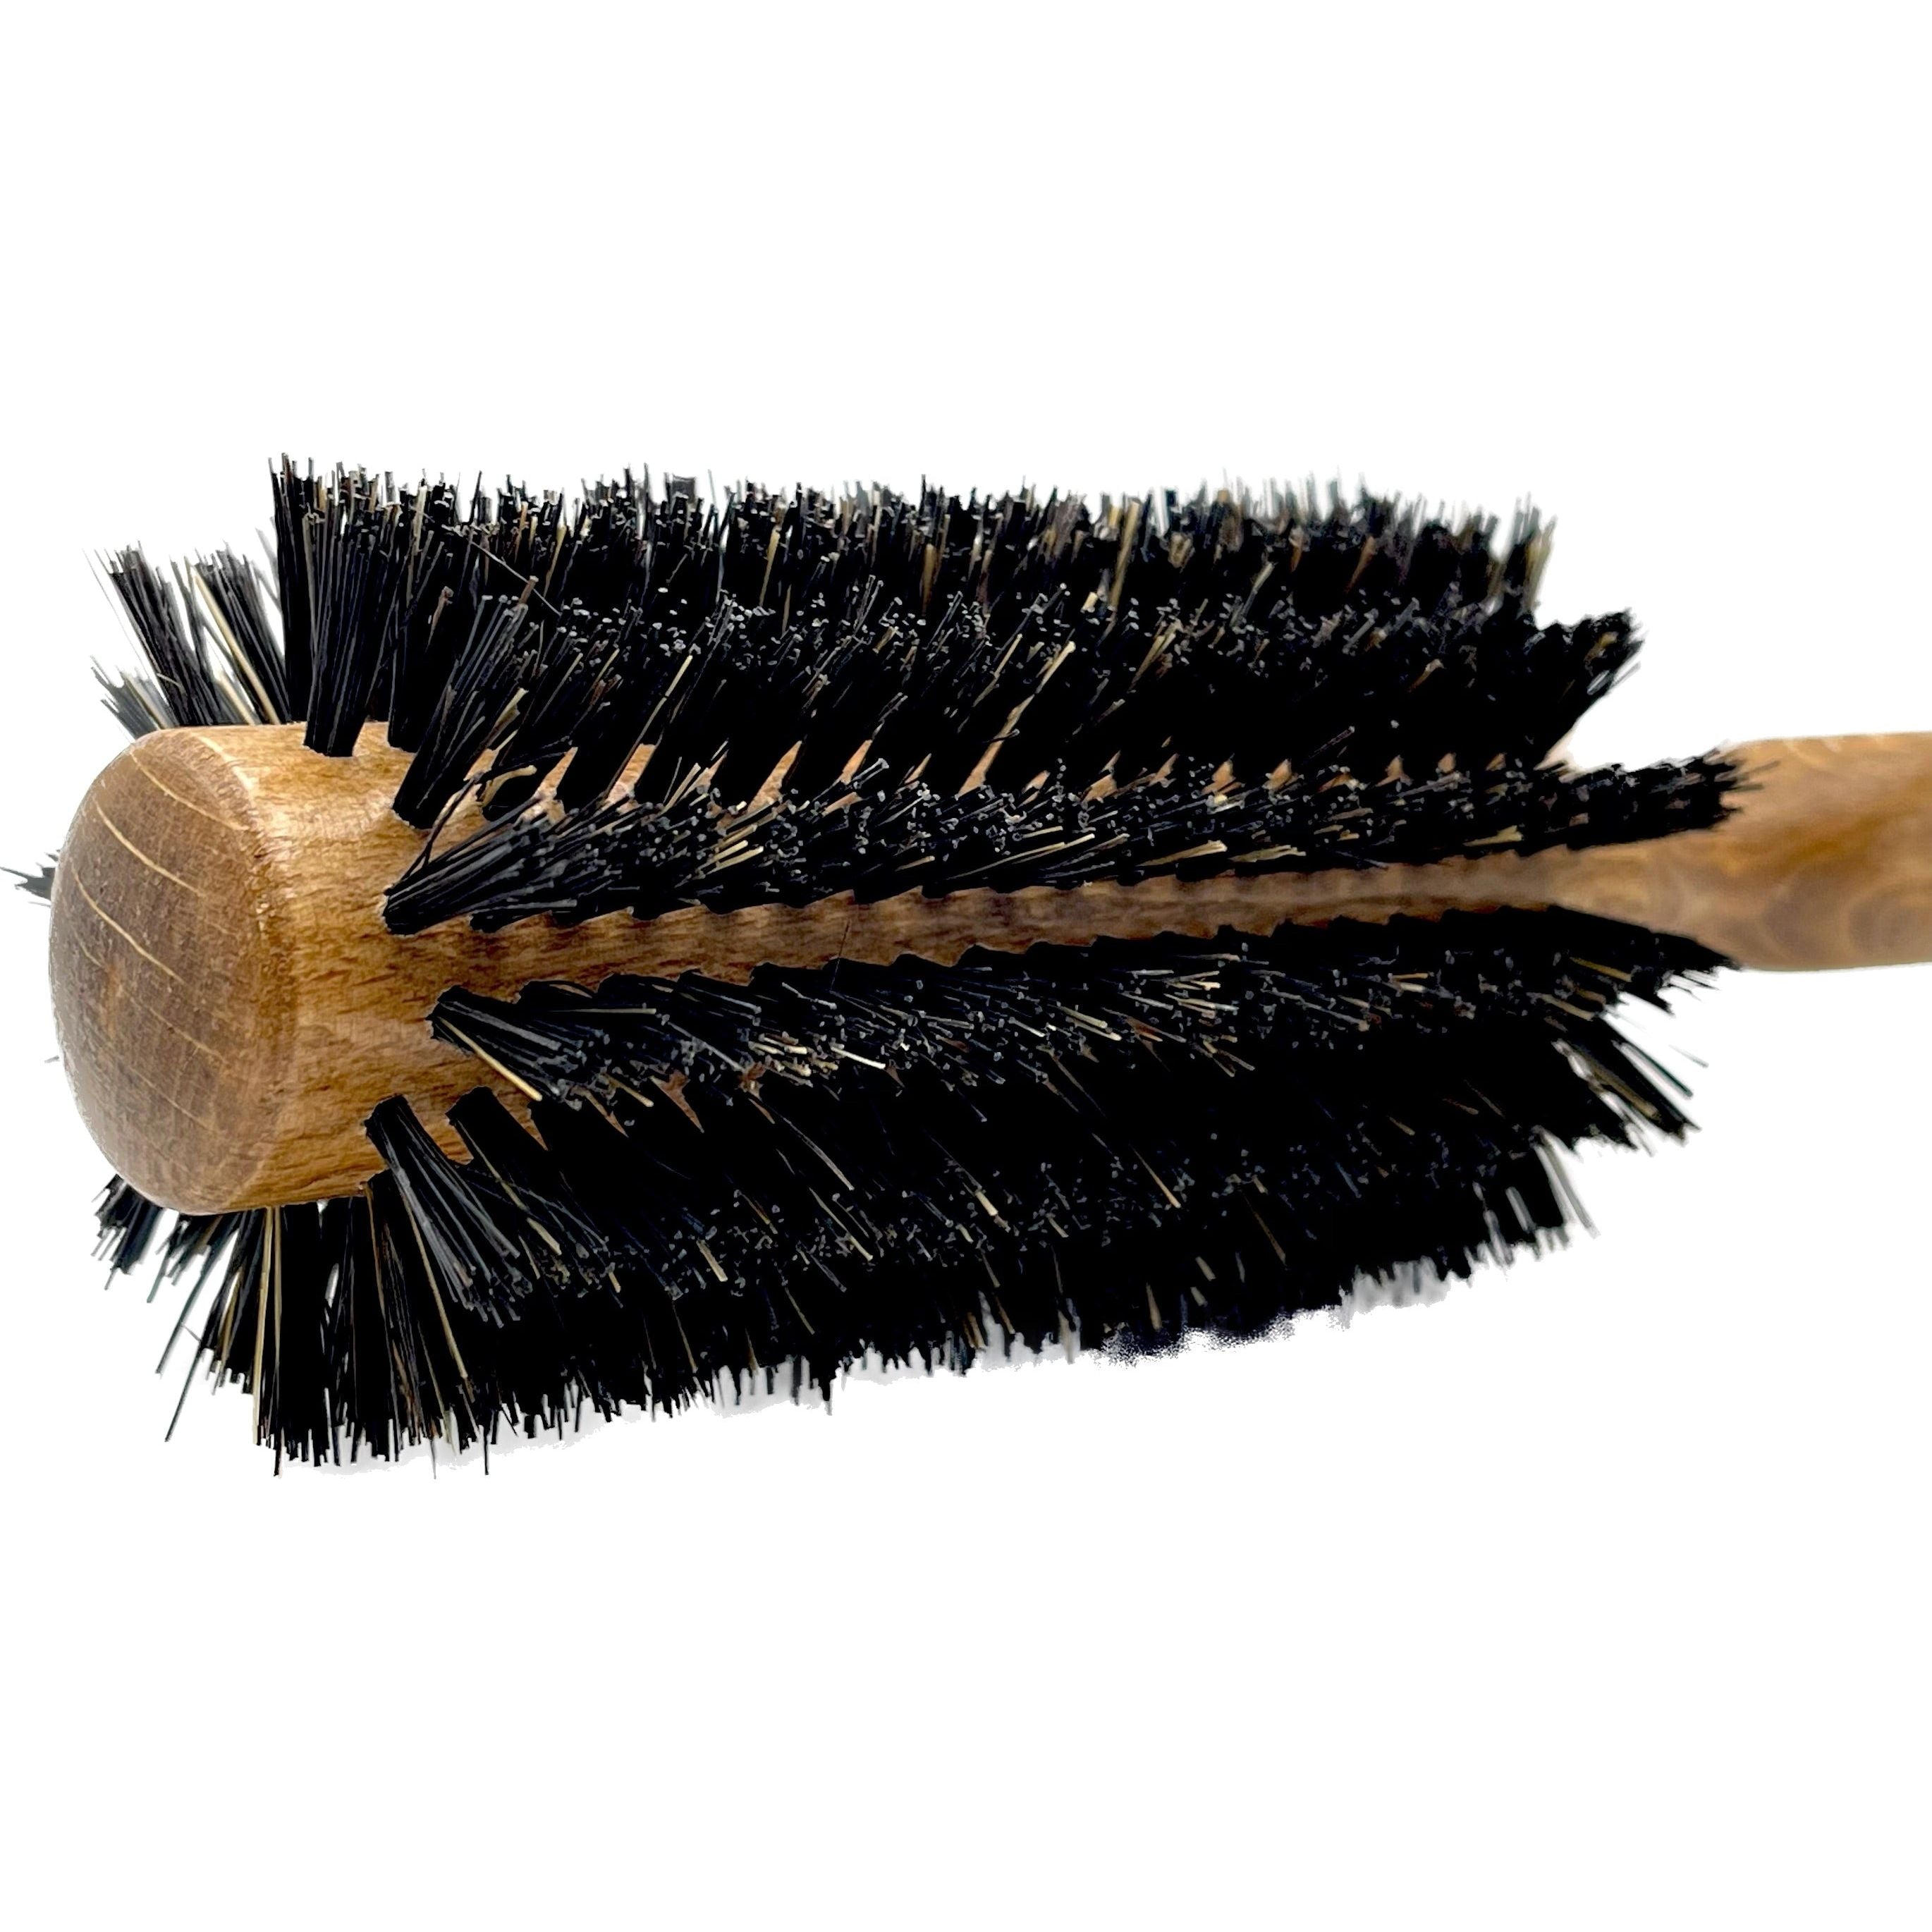 Dural Hair Brush 14 Rows Wood Pure Wild Boar Bristles